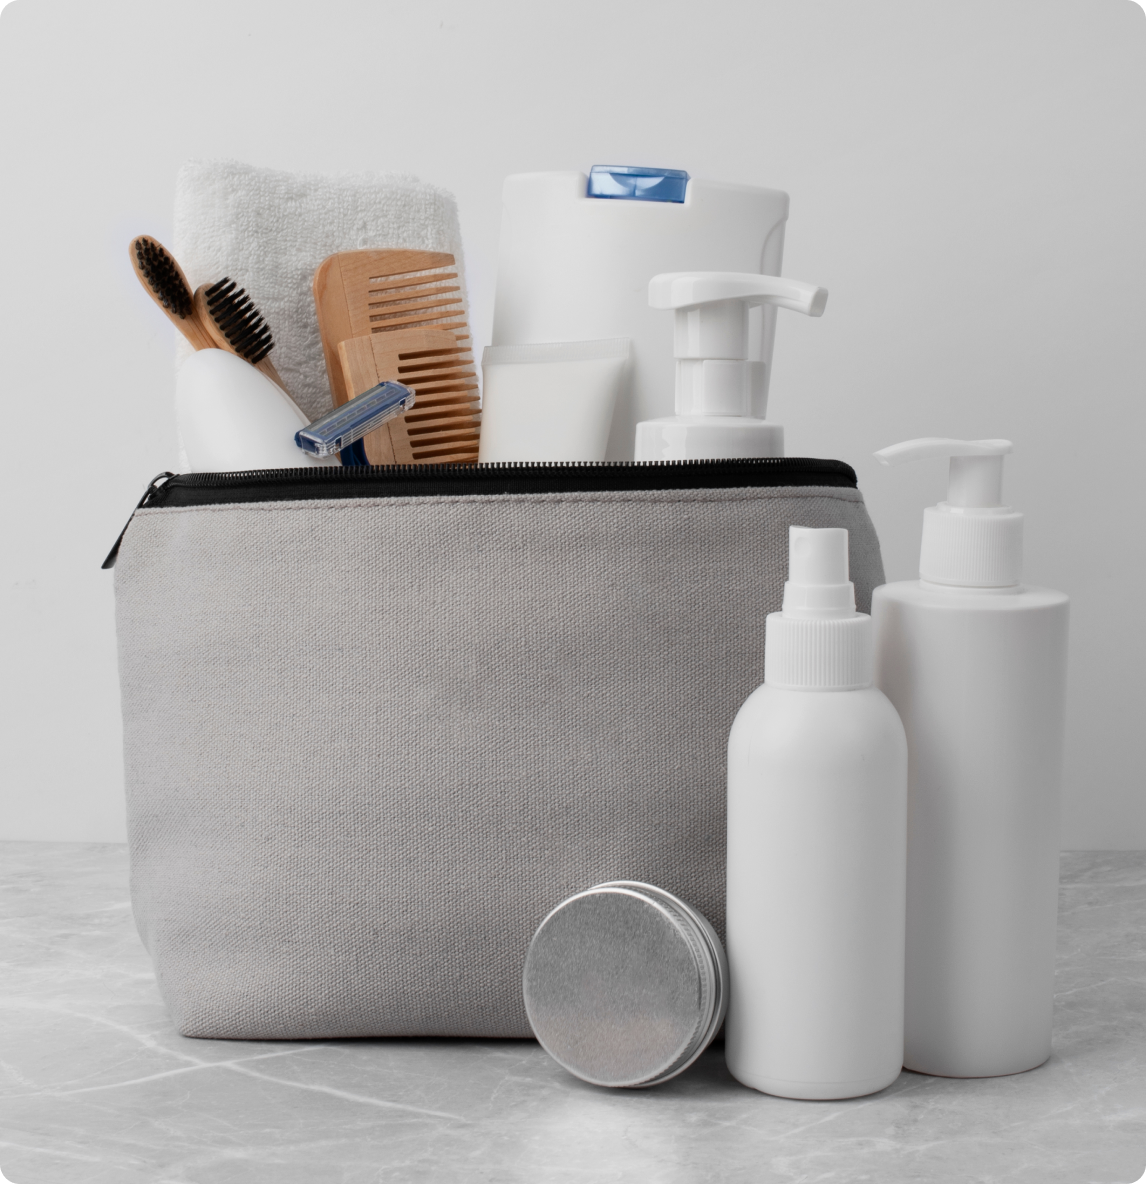 Hygiene supplies in a bag